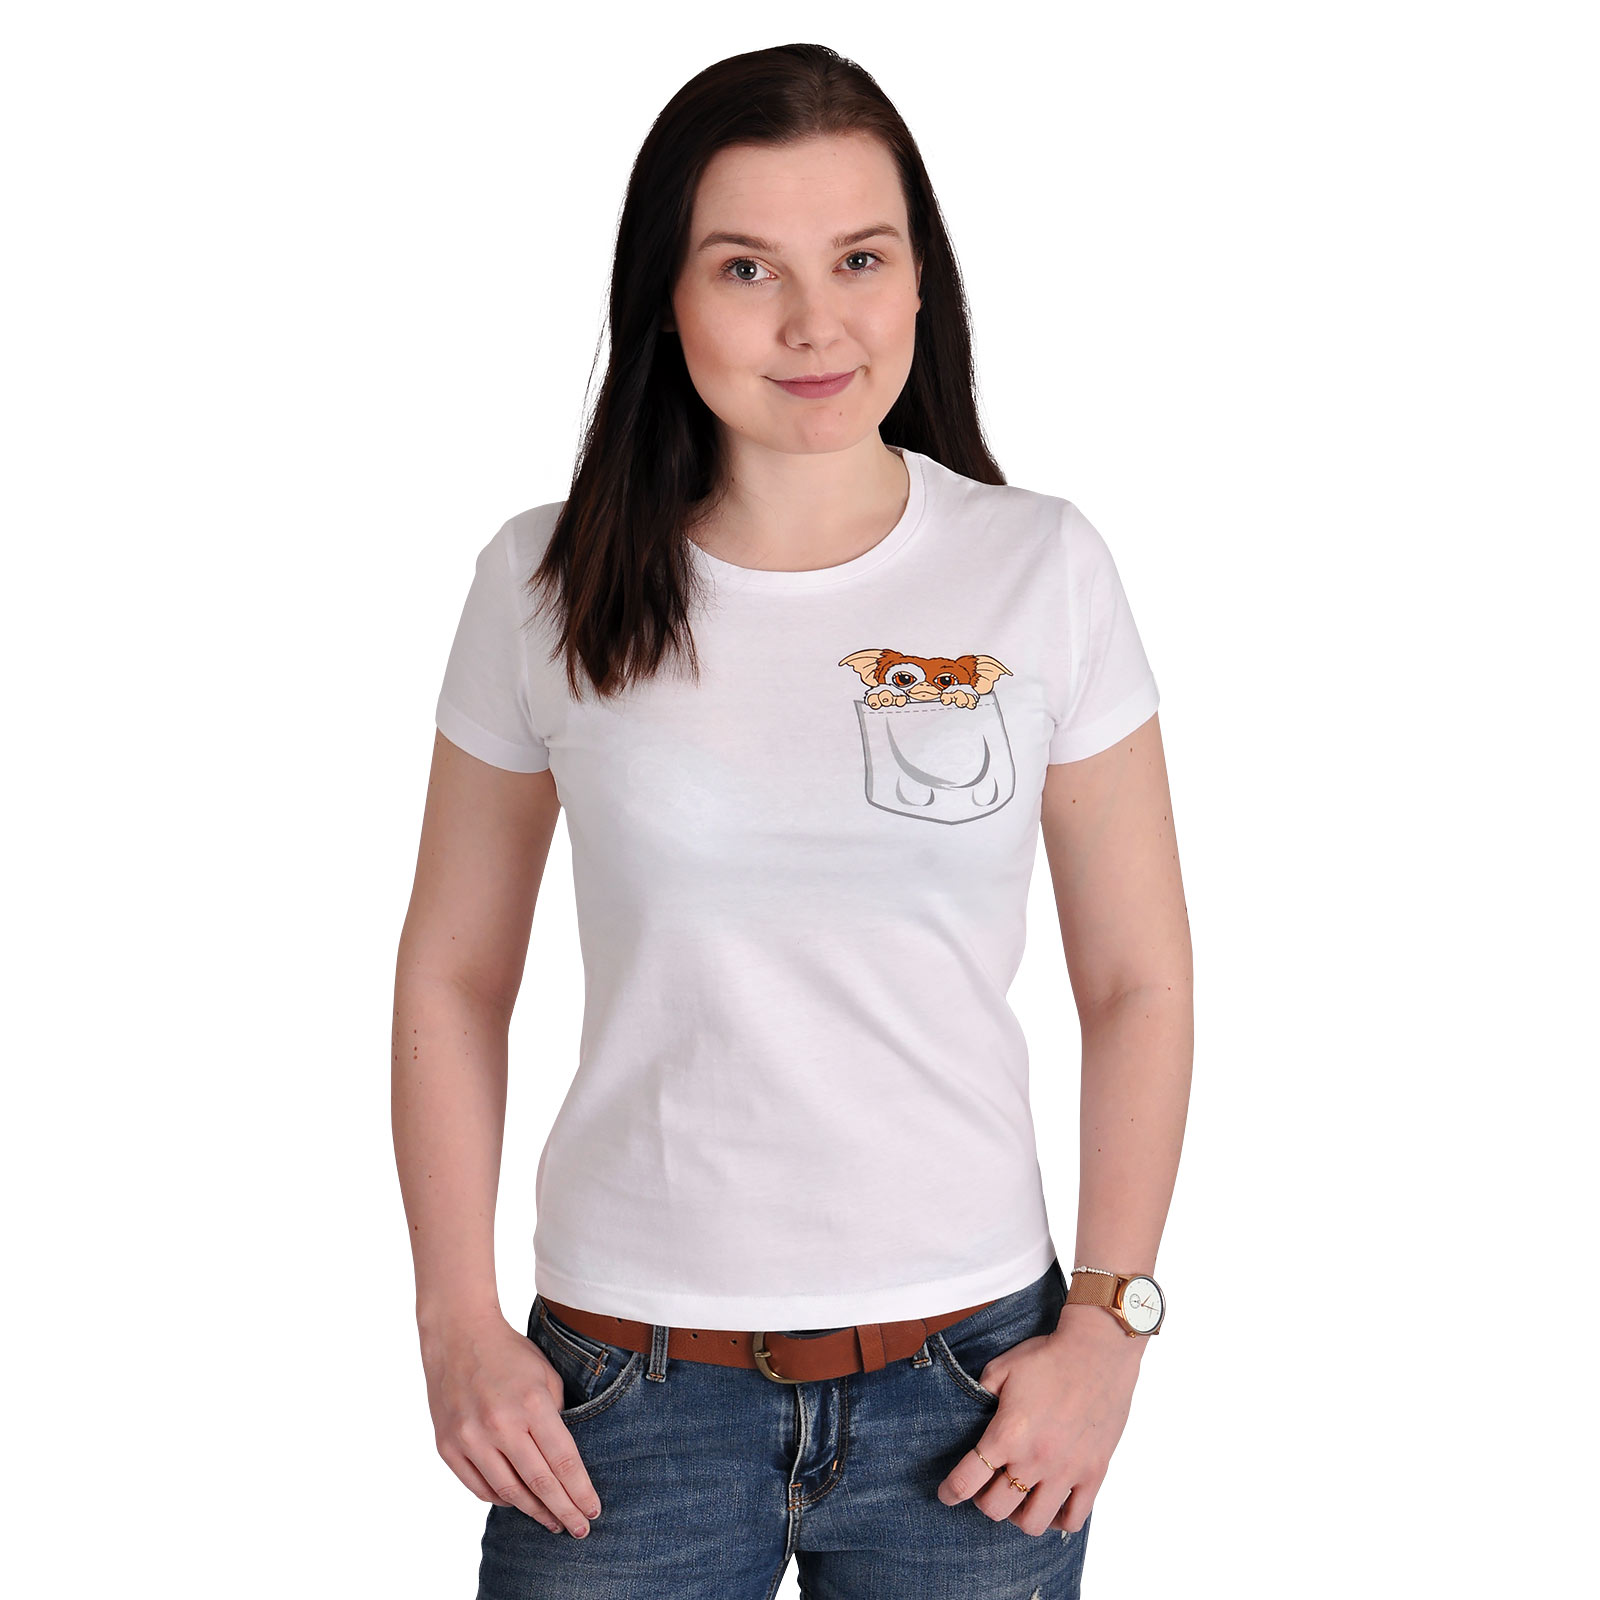 Gremlins - T-shirt Gizmo de poche pour femmes blanc